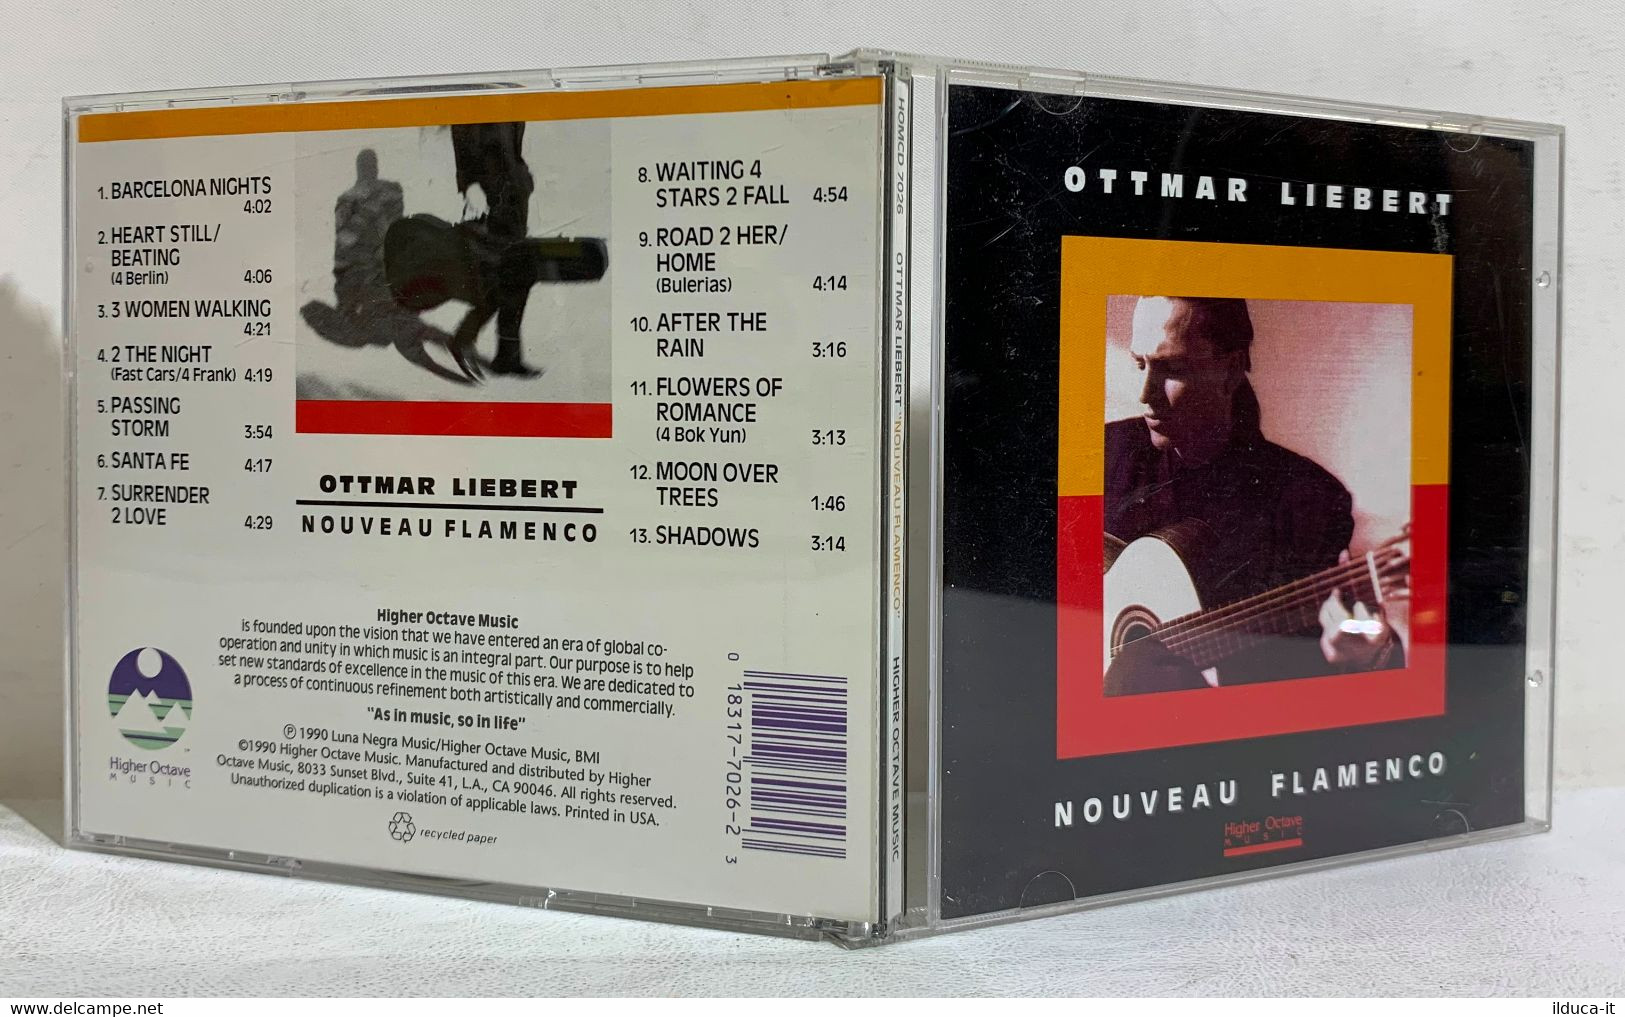 I103922 CD - Ottmar Liebert - Nouveau Flamenco - Higher Octave Music 1990 - World Music